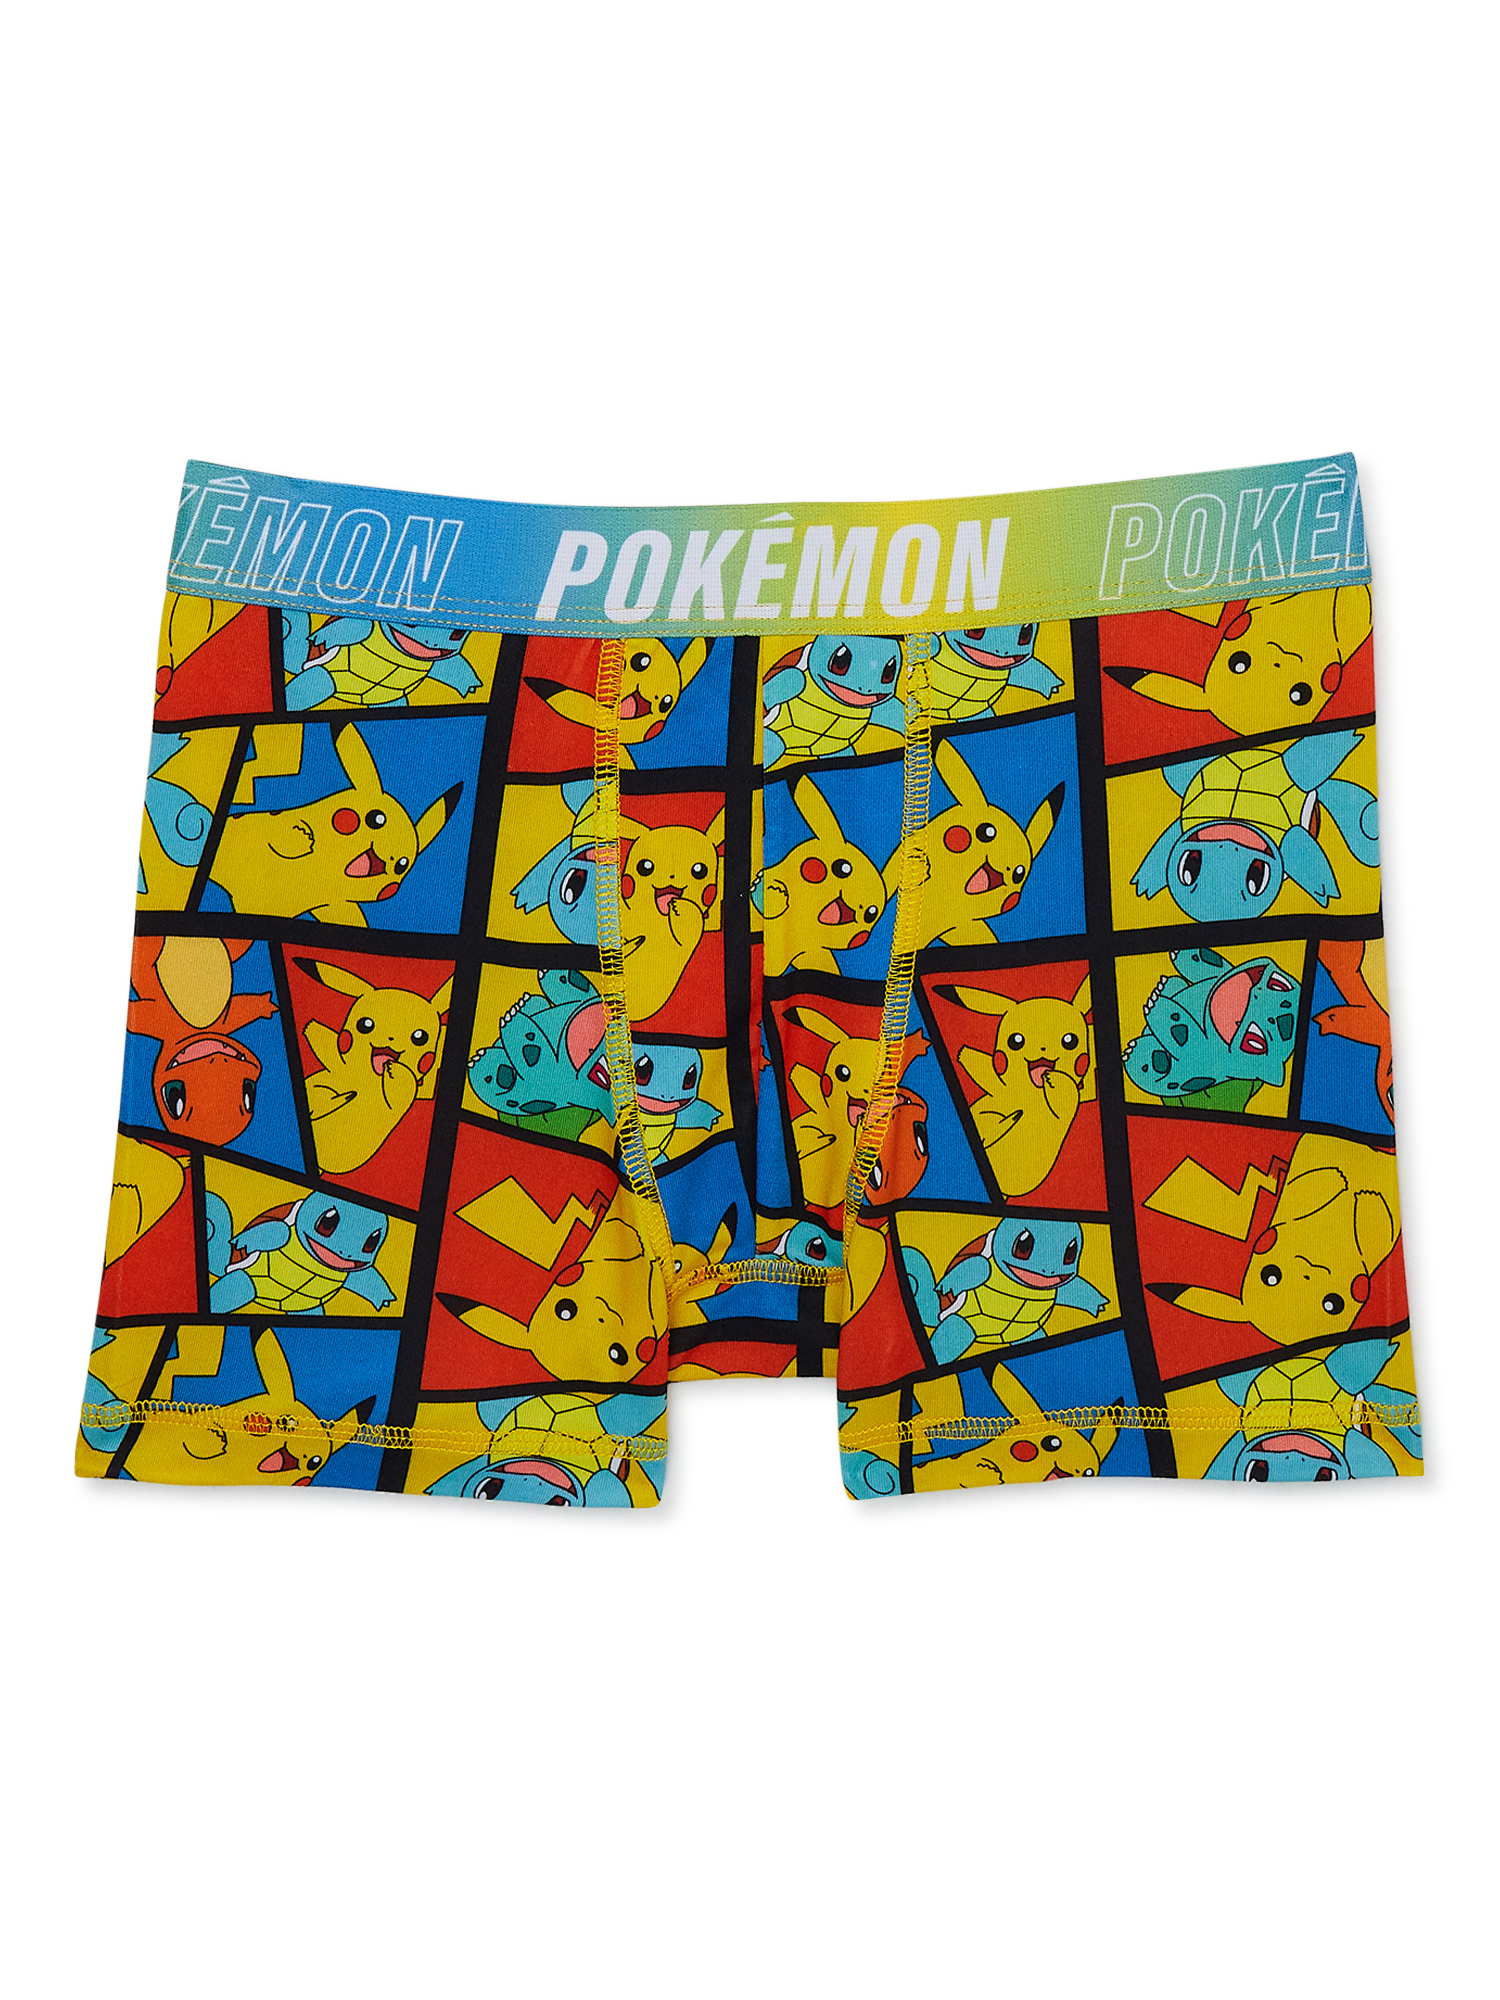 Pokémon Boy's Boxer Briefs Underwear, 4-pack, Sizes 4-14 - image 3 of 7